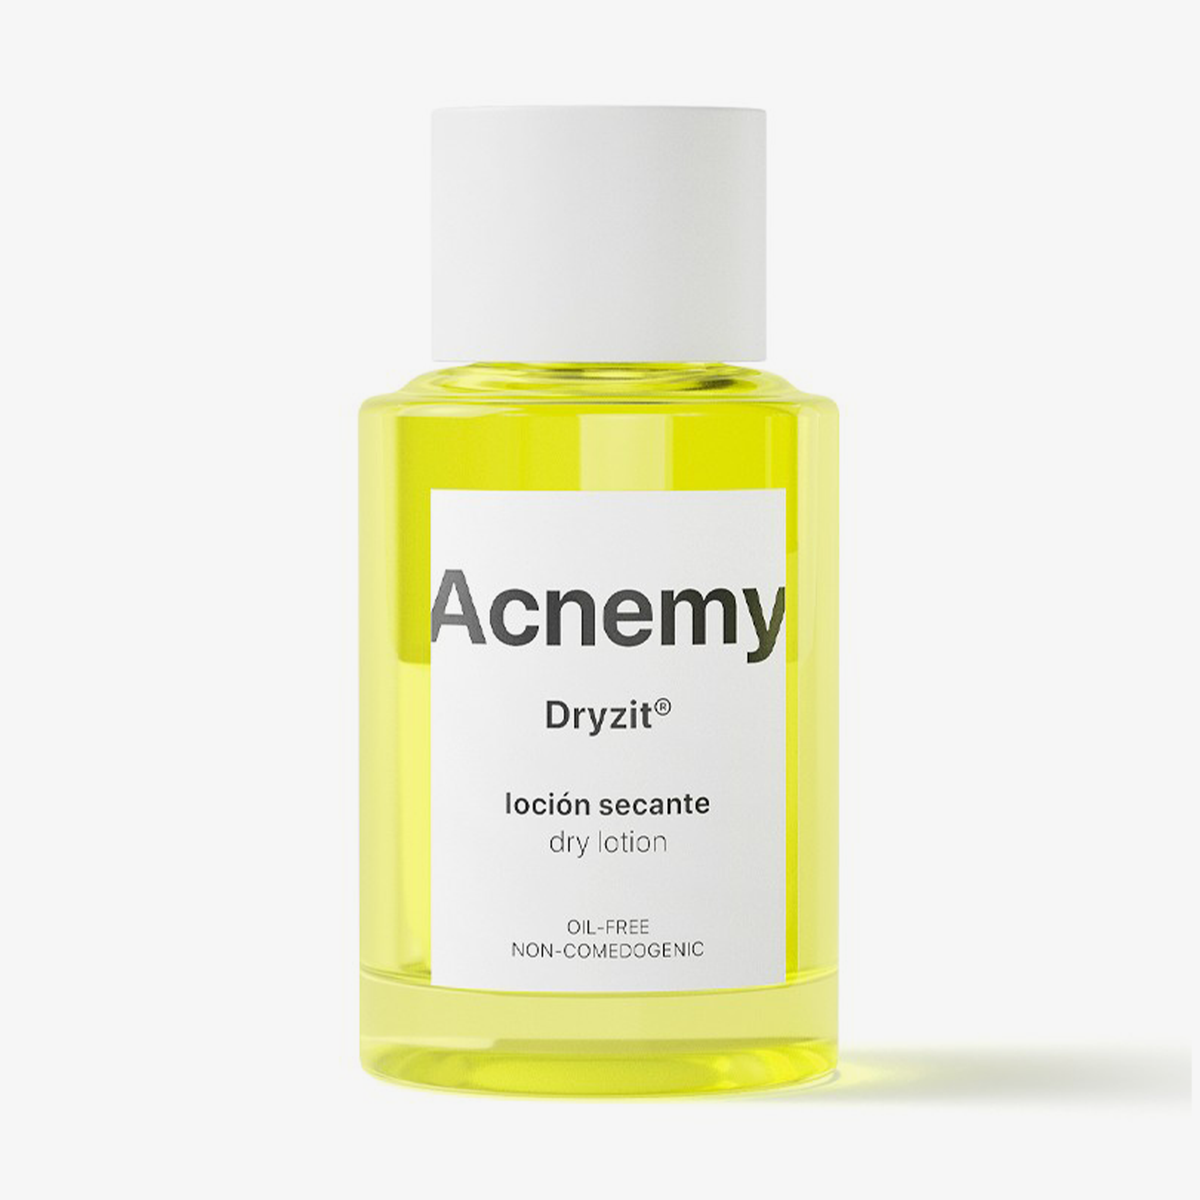 Acnemy Dryzit® Mini vor weißem Hintergrund